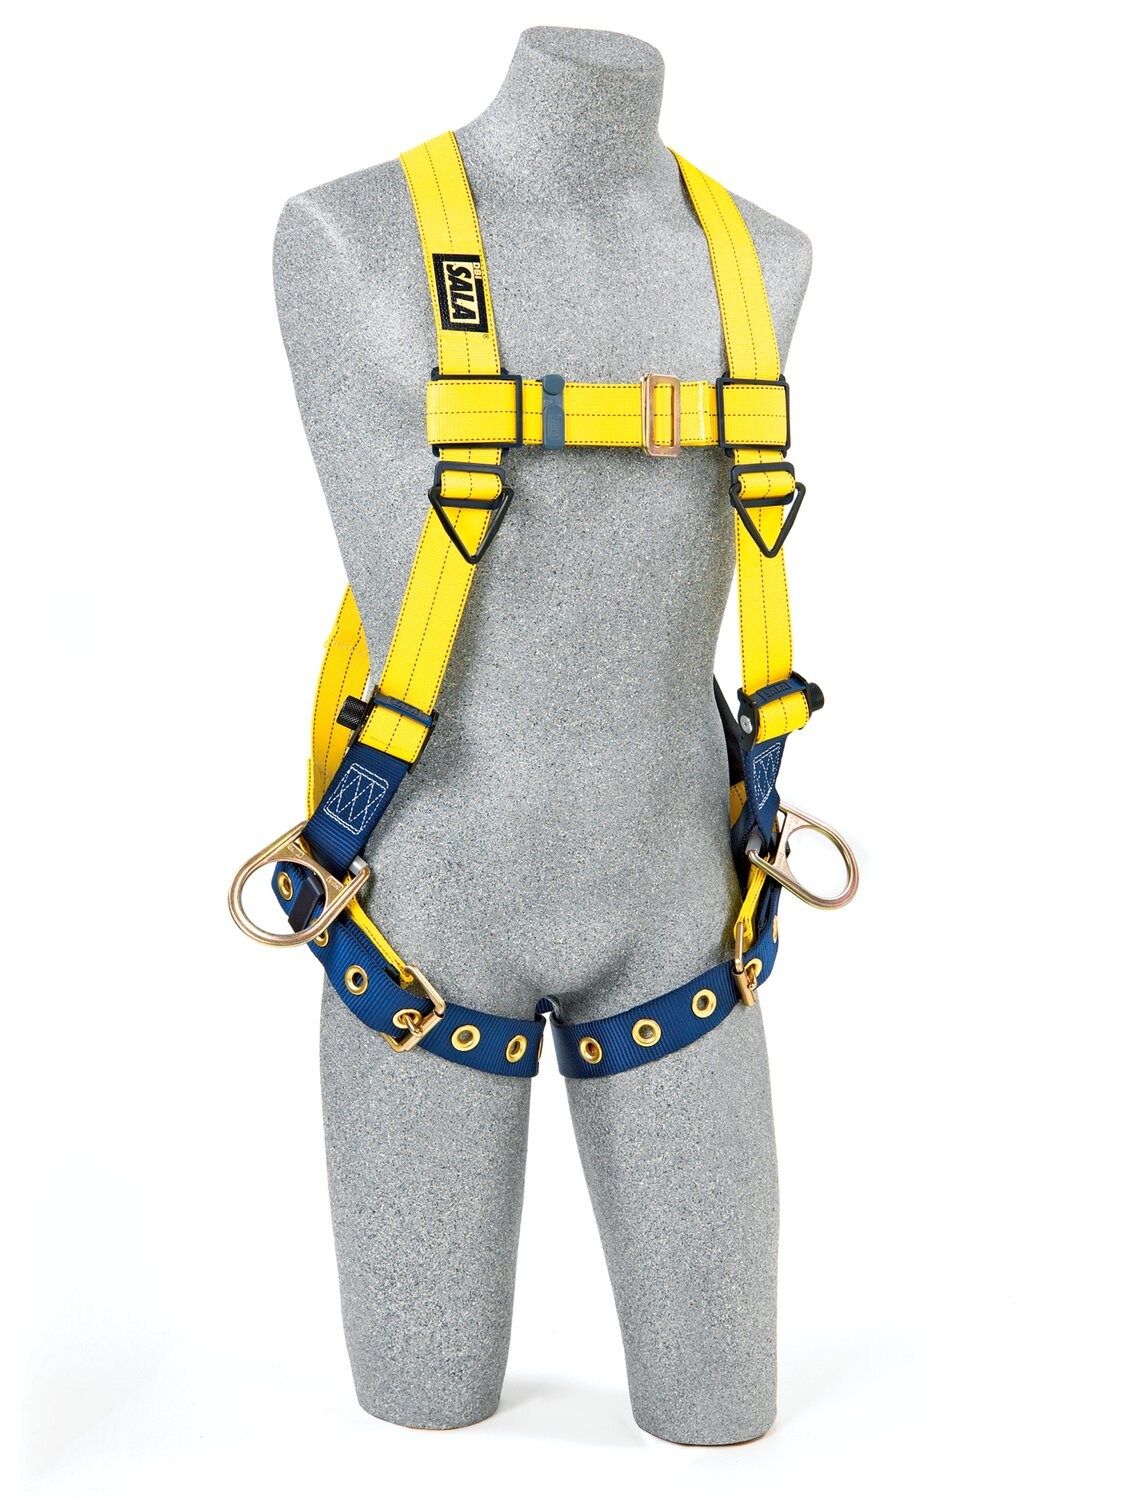 7012815506 - 3M DBI-SALA Delta Vest Positioning Safety Harness 1104889, Medium